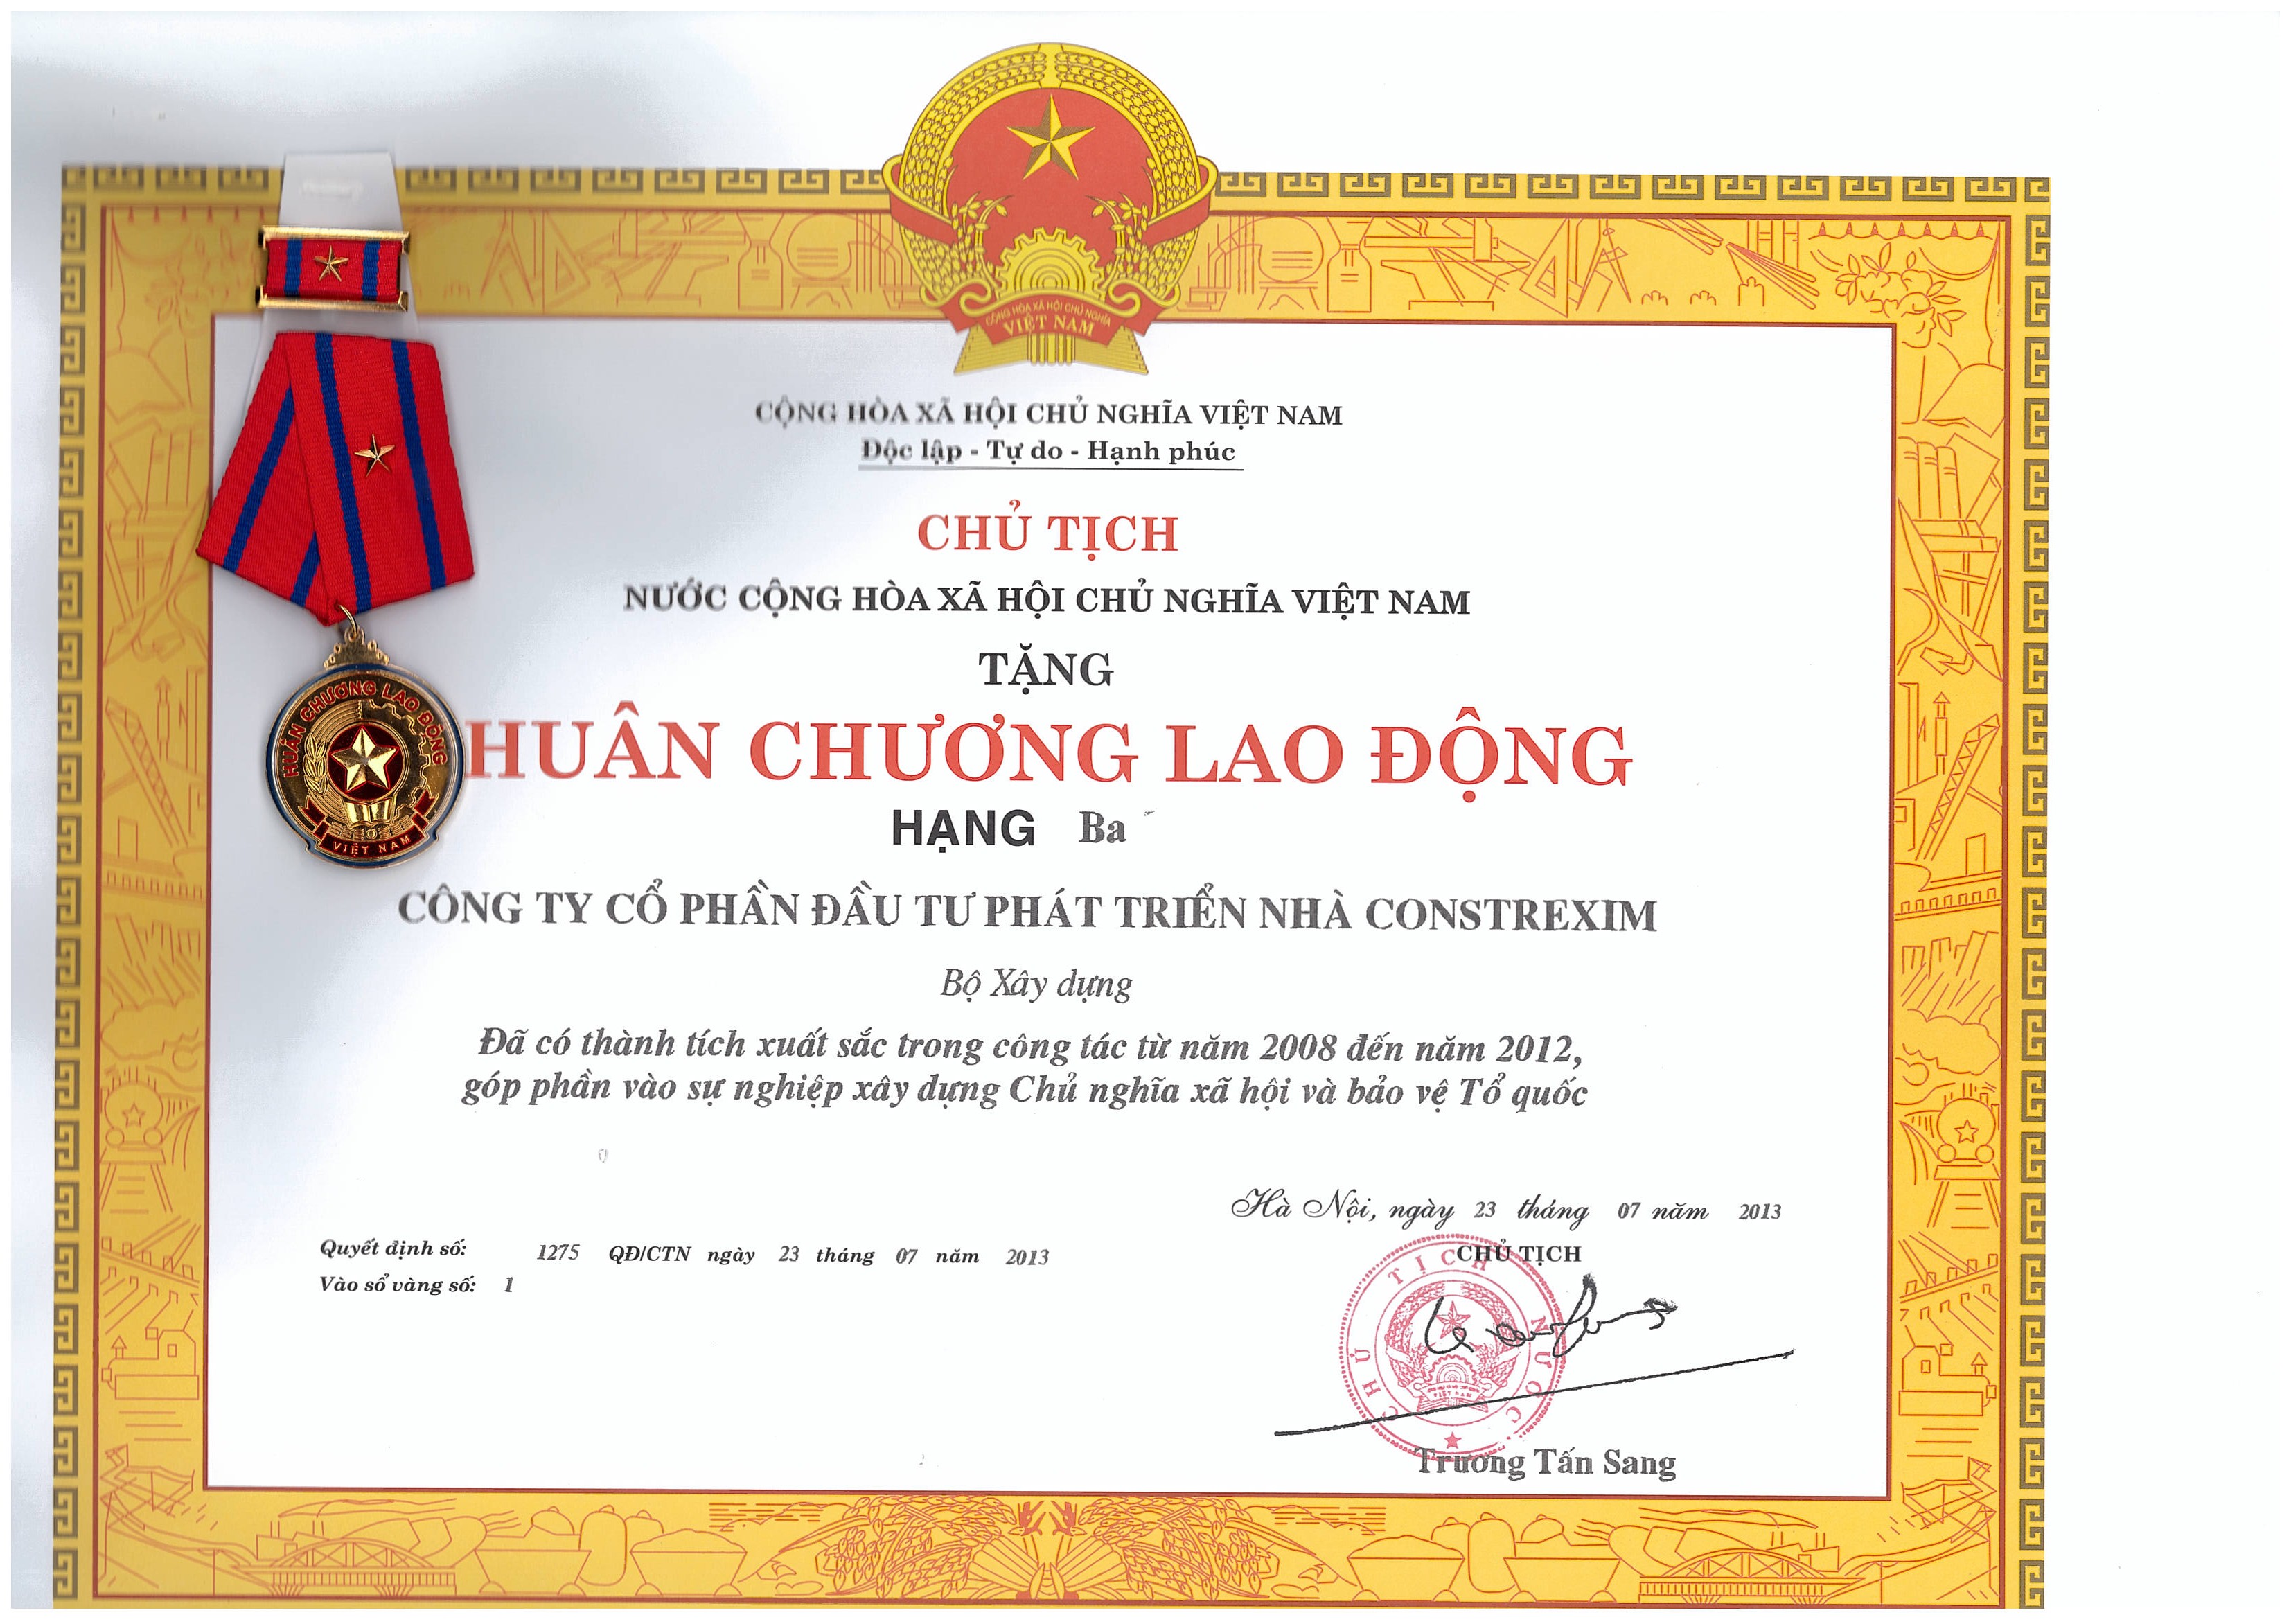 Huân chương lao động Hạng Ba của Chủ tịch nước Cộng Hòa Xã Hội Chủ Nghĩa Việt Nam tặng Công ty CONSTREXIM - HOD